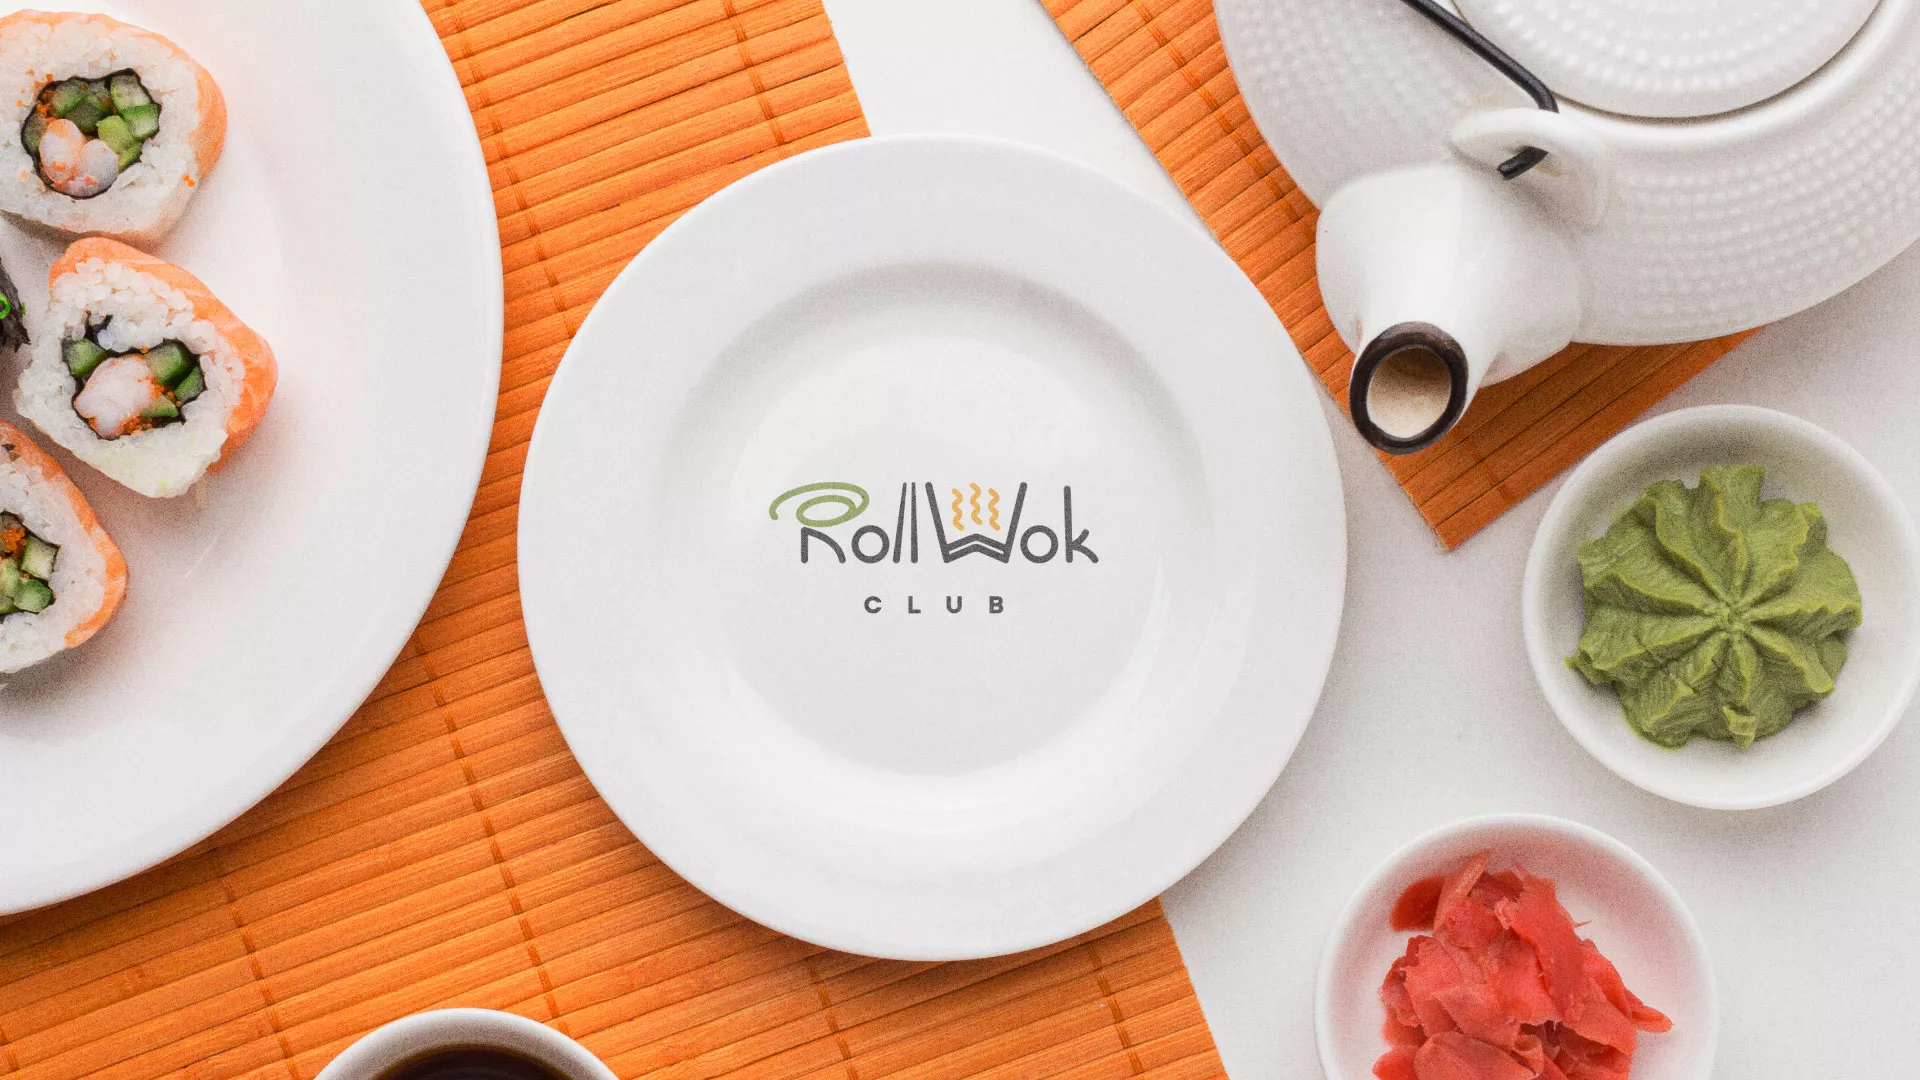 Разработка логотипа и фирменного стиля суши-бара «Roll Wok Club» в Северске